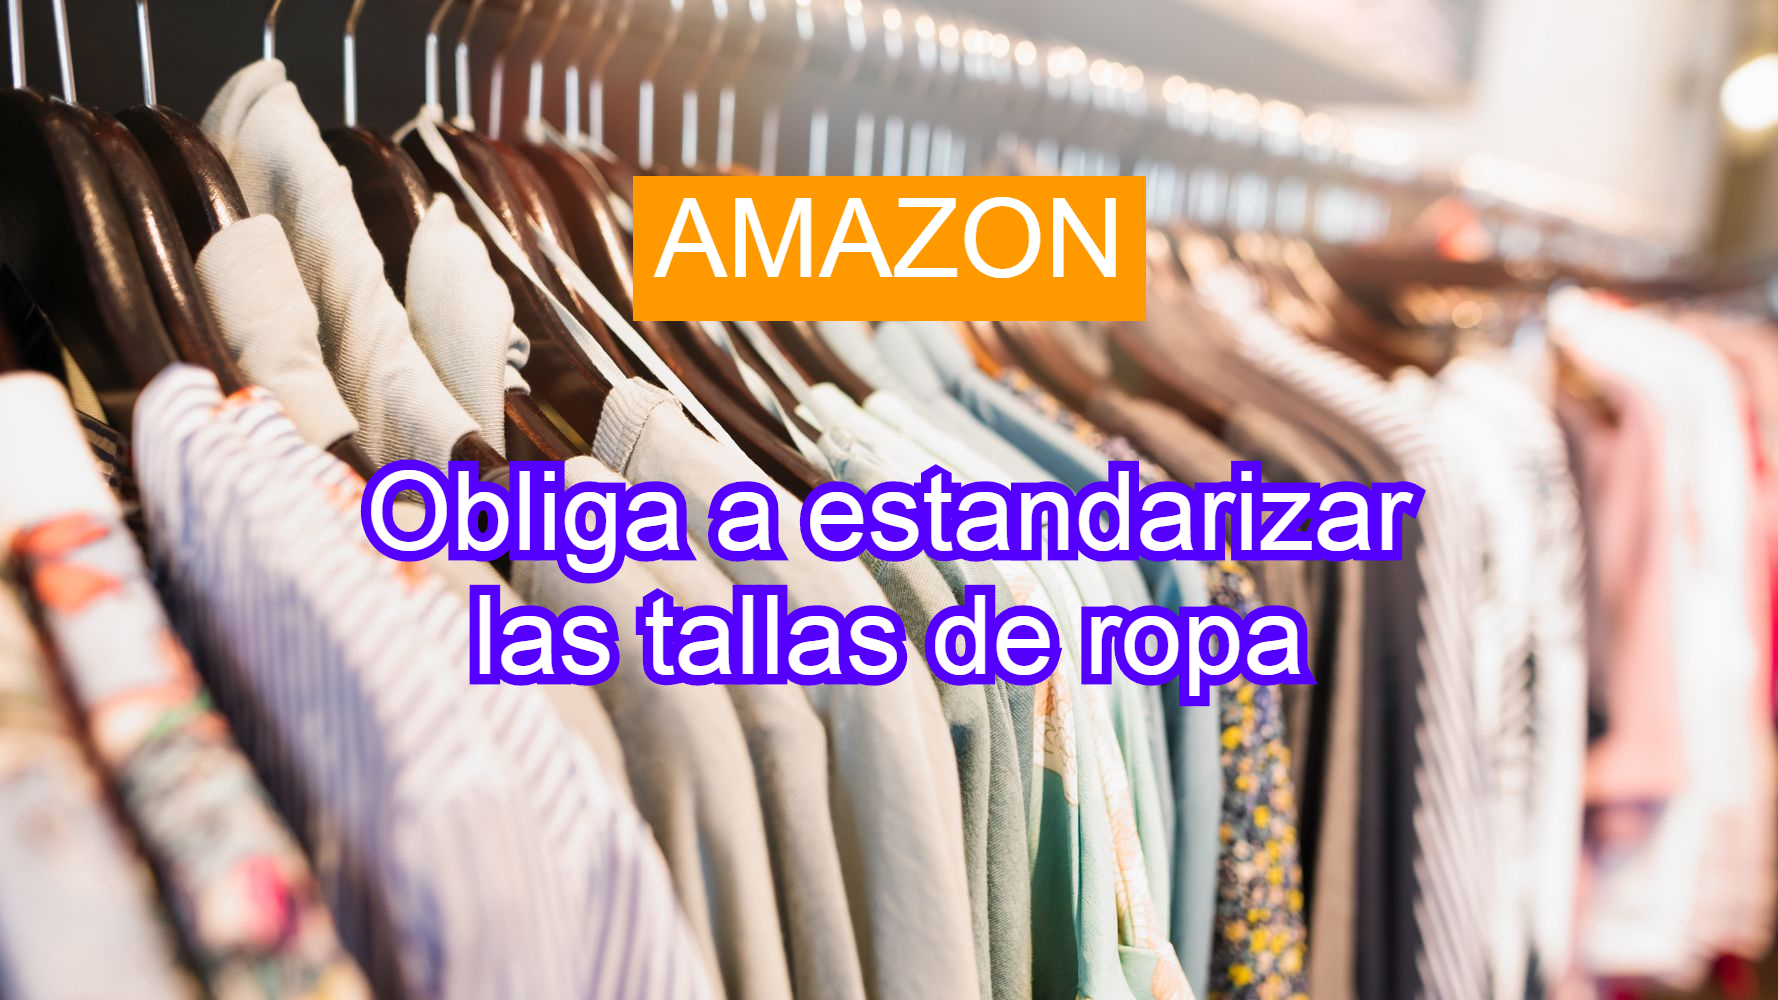 Amazon estandariza tallas de ropa obligatoriamente